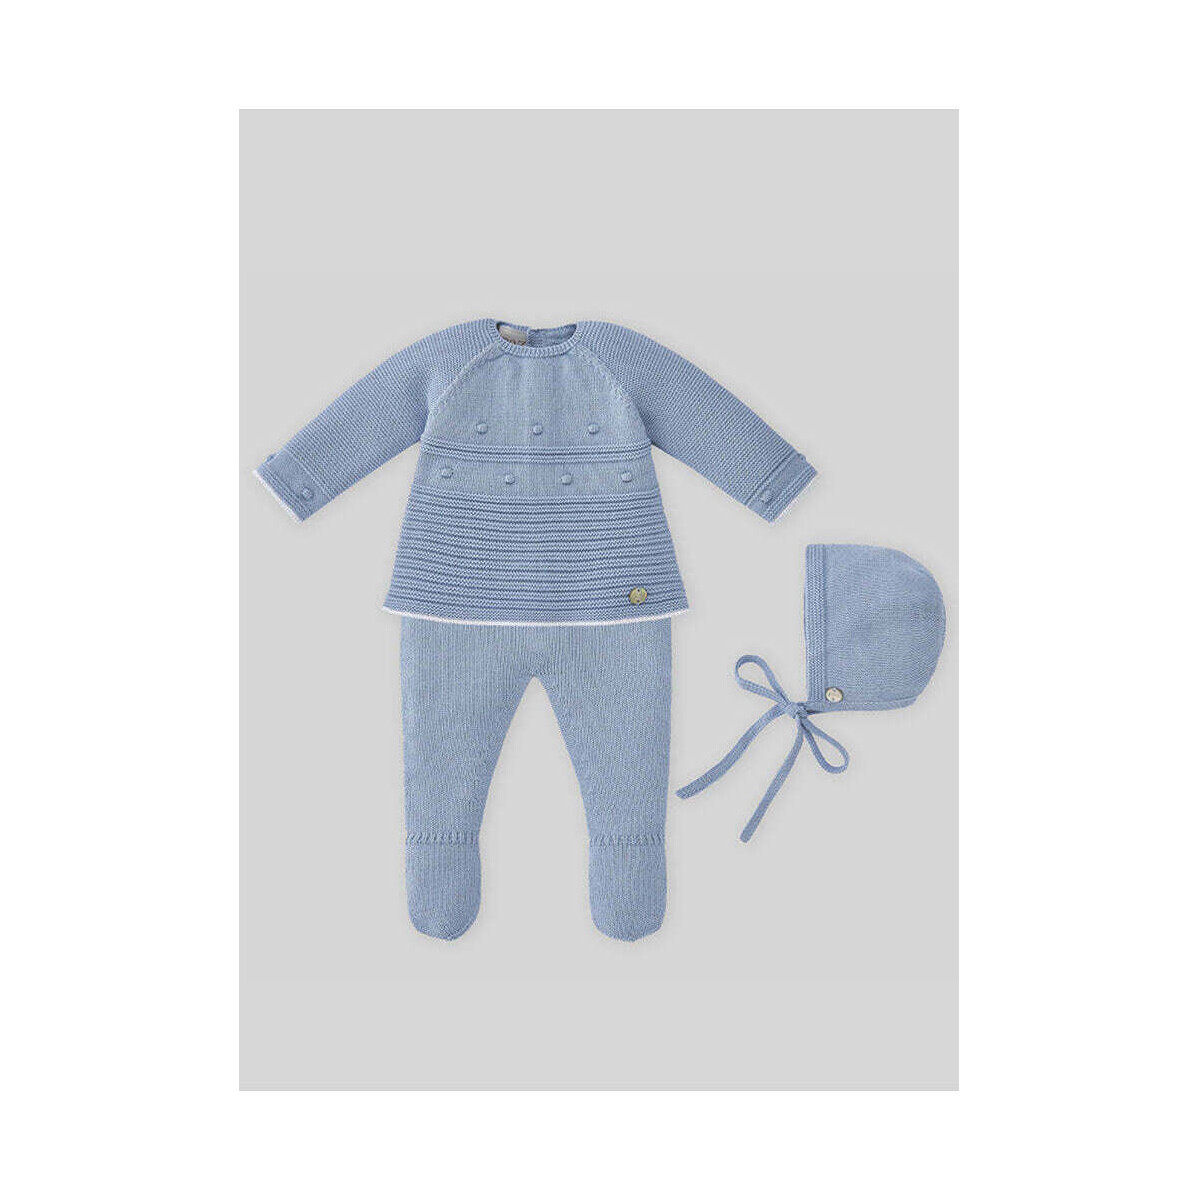 Textil Rapaz O seu item foi adicionado aos favoritos 113-100801-8601-3-10 Azul